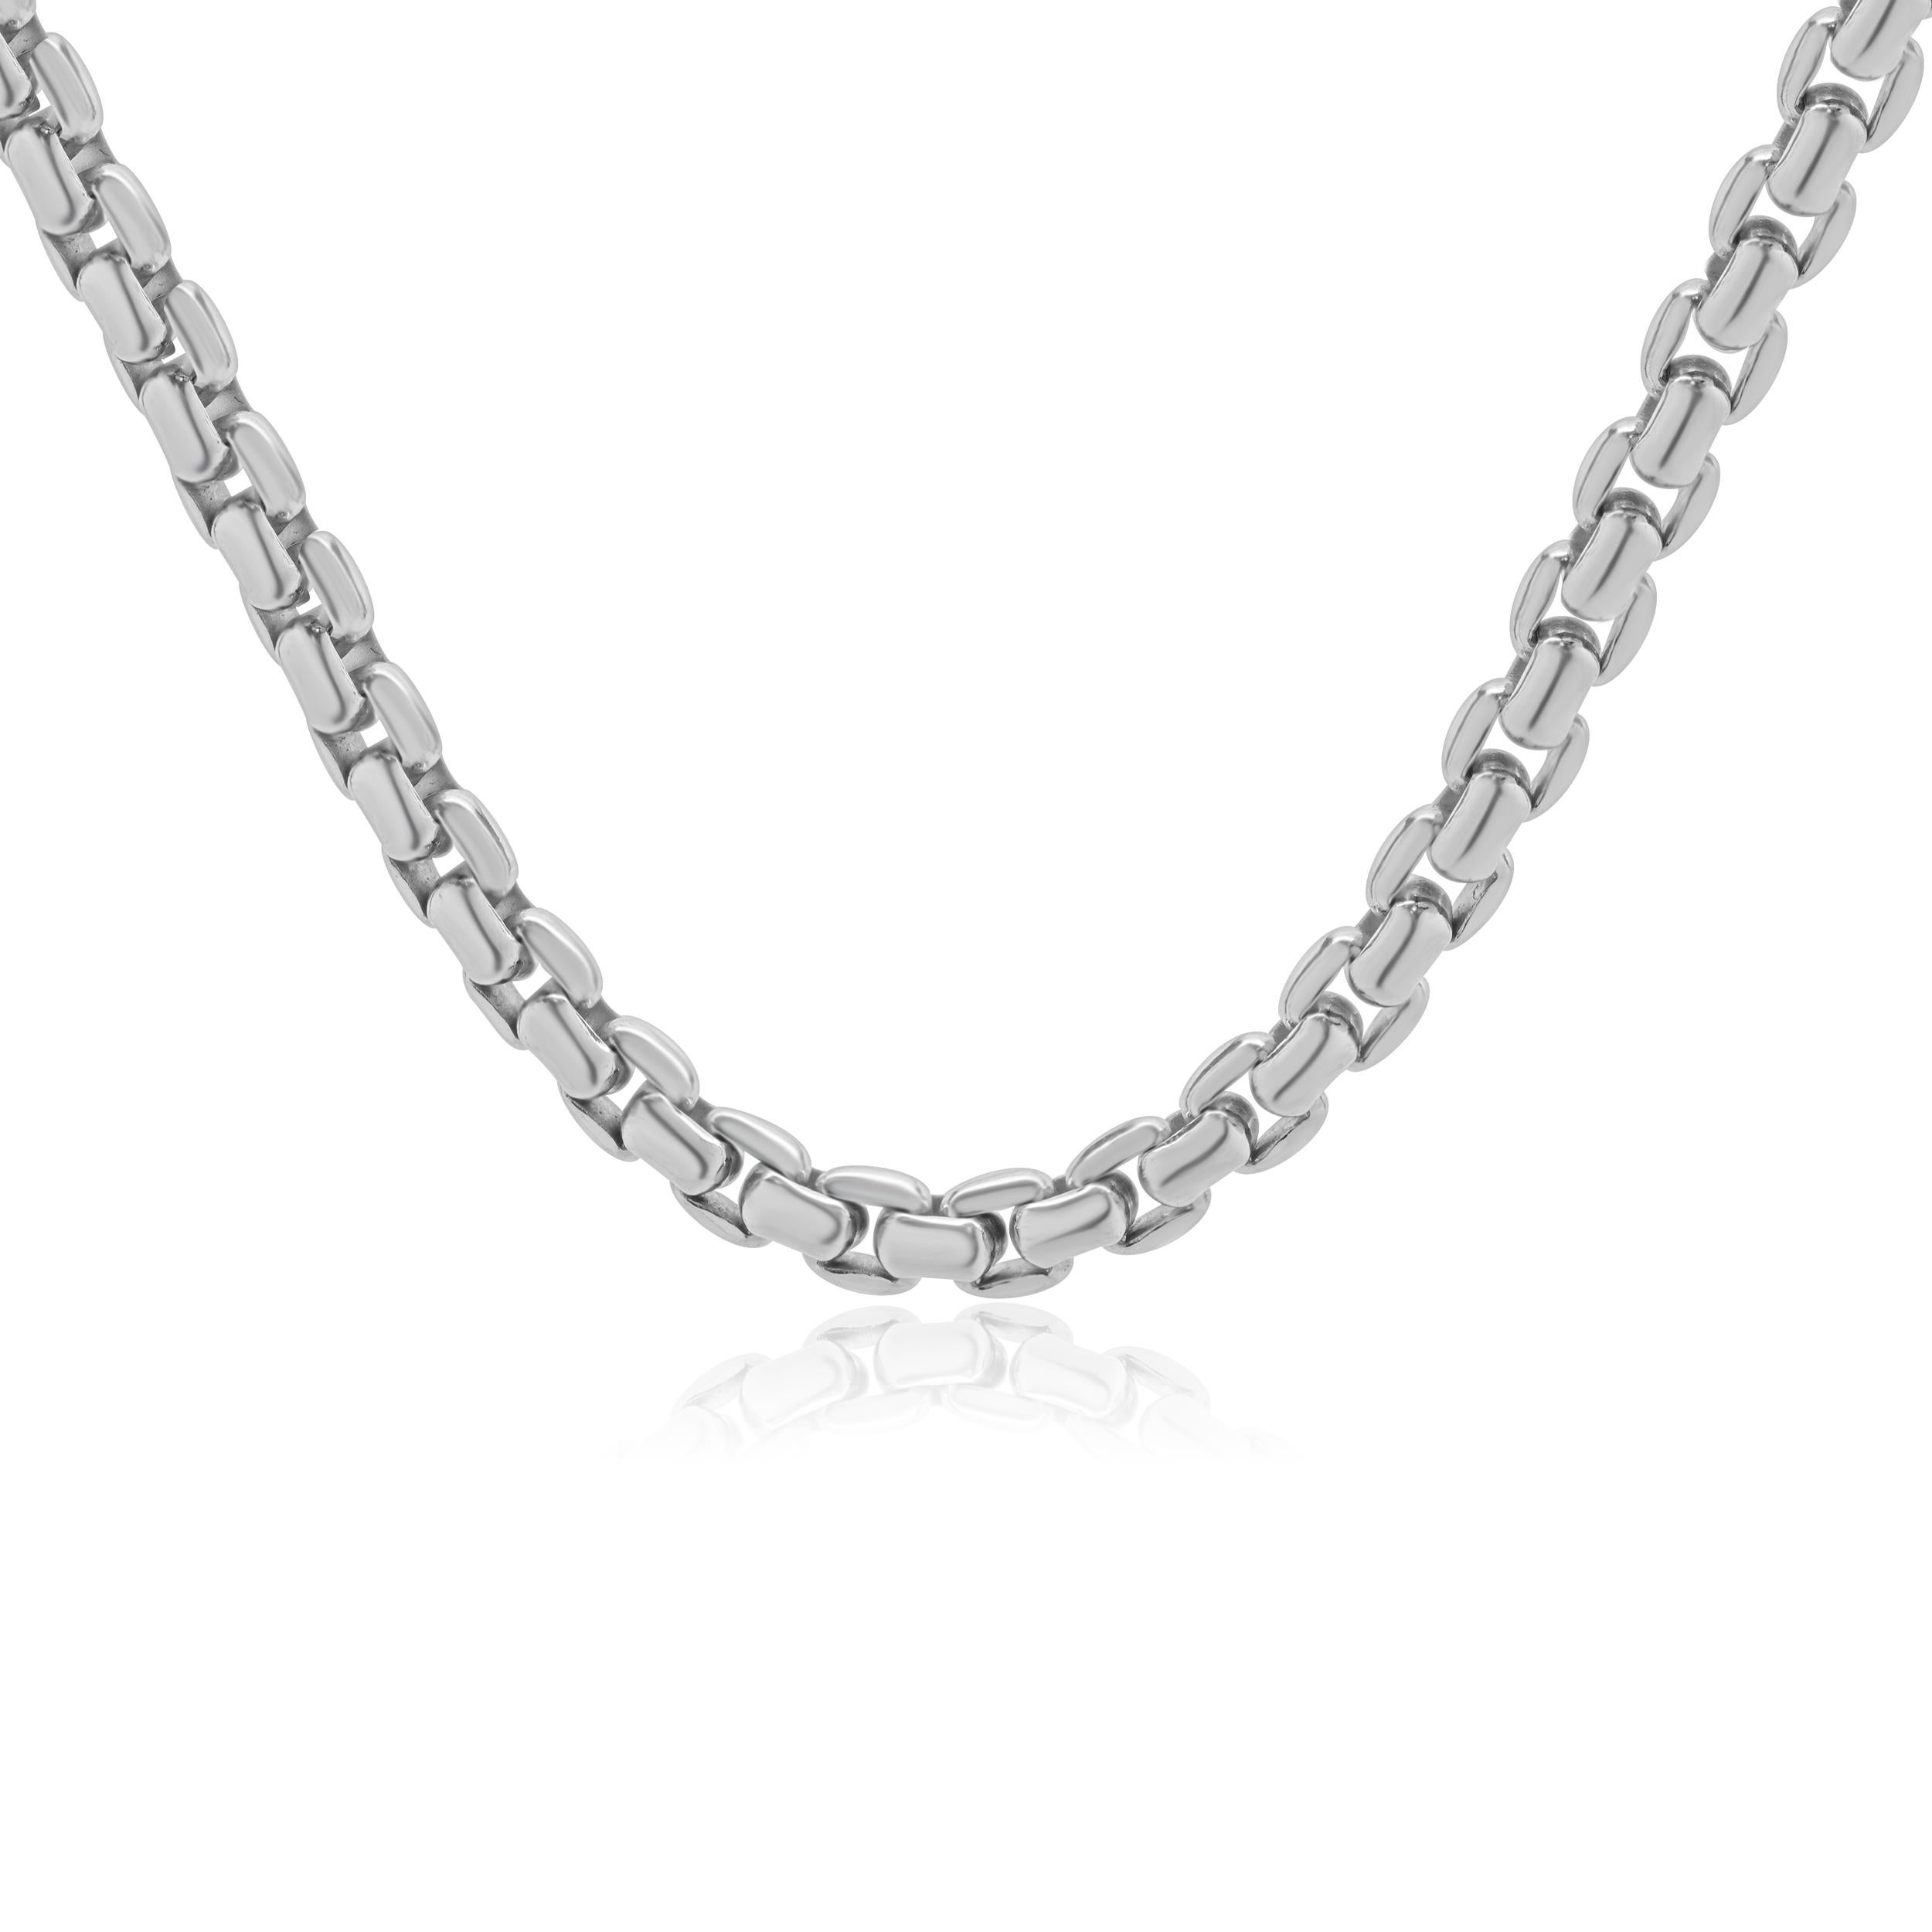 Designer : Tiffany & Co. 
Matériau : Or blanc 18K
Dimensions : la chaîne mesure 20 pouces 
Poids : 76,76 grammes